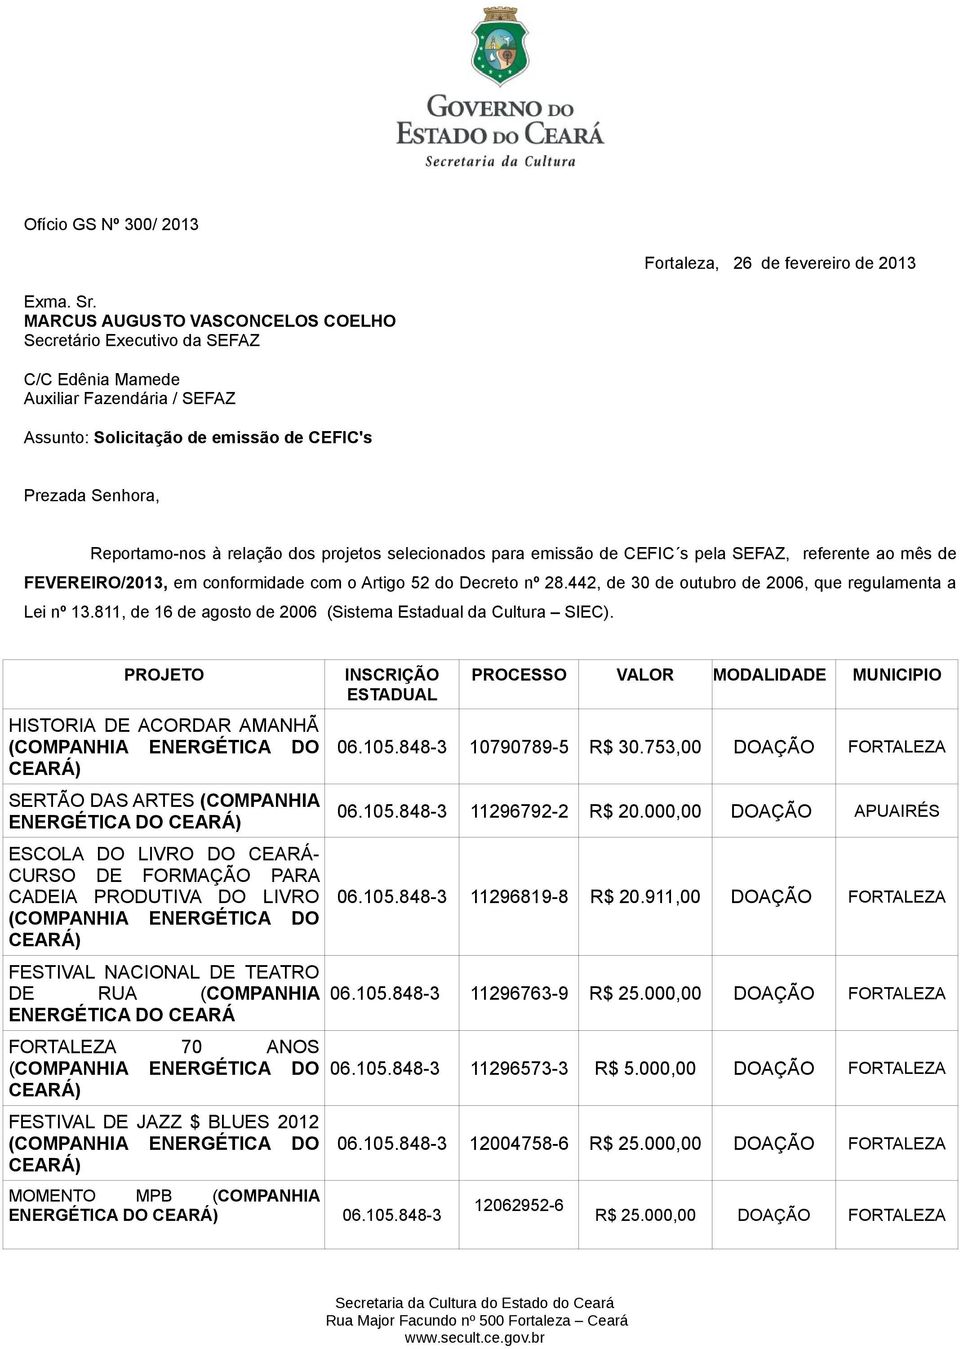 projetos selecionados para emissão de CEFIC s pela SEFAZ, referente ao mês de FEVEREIRO/2013, em conformidade com o Artigo 52 do Decreto nº 28.